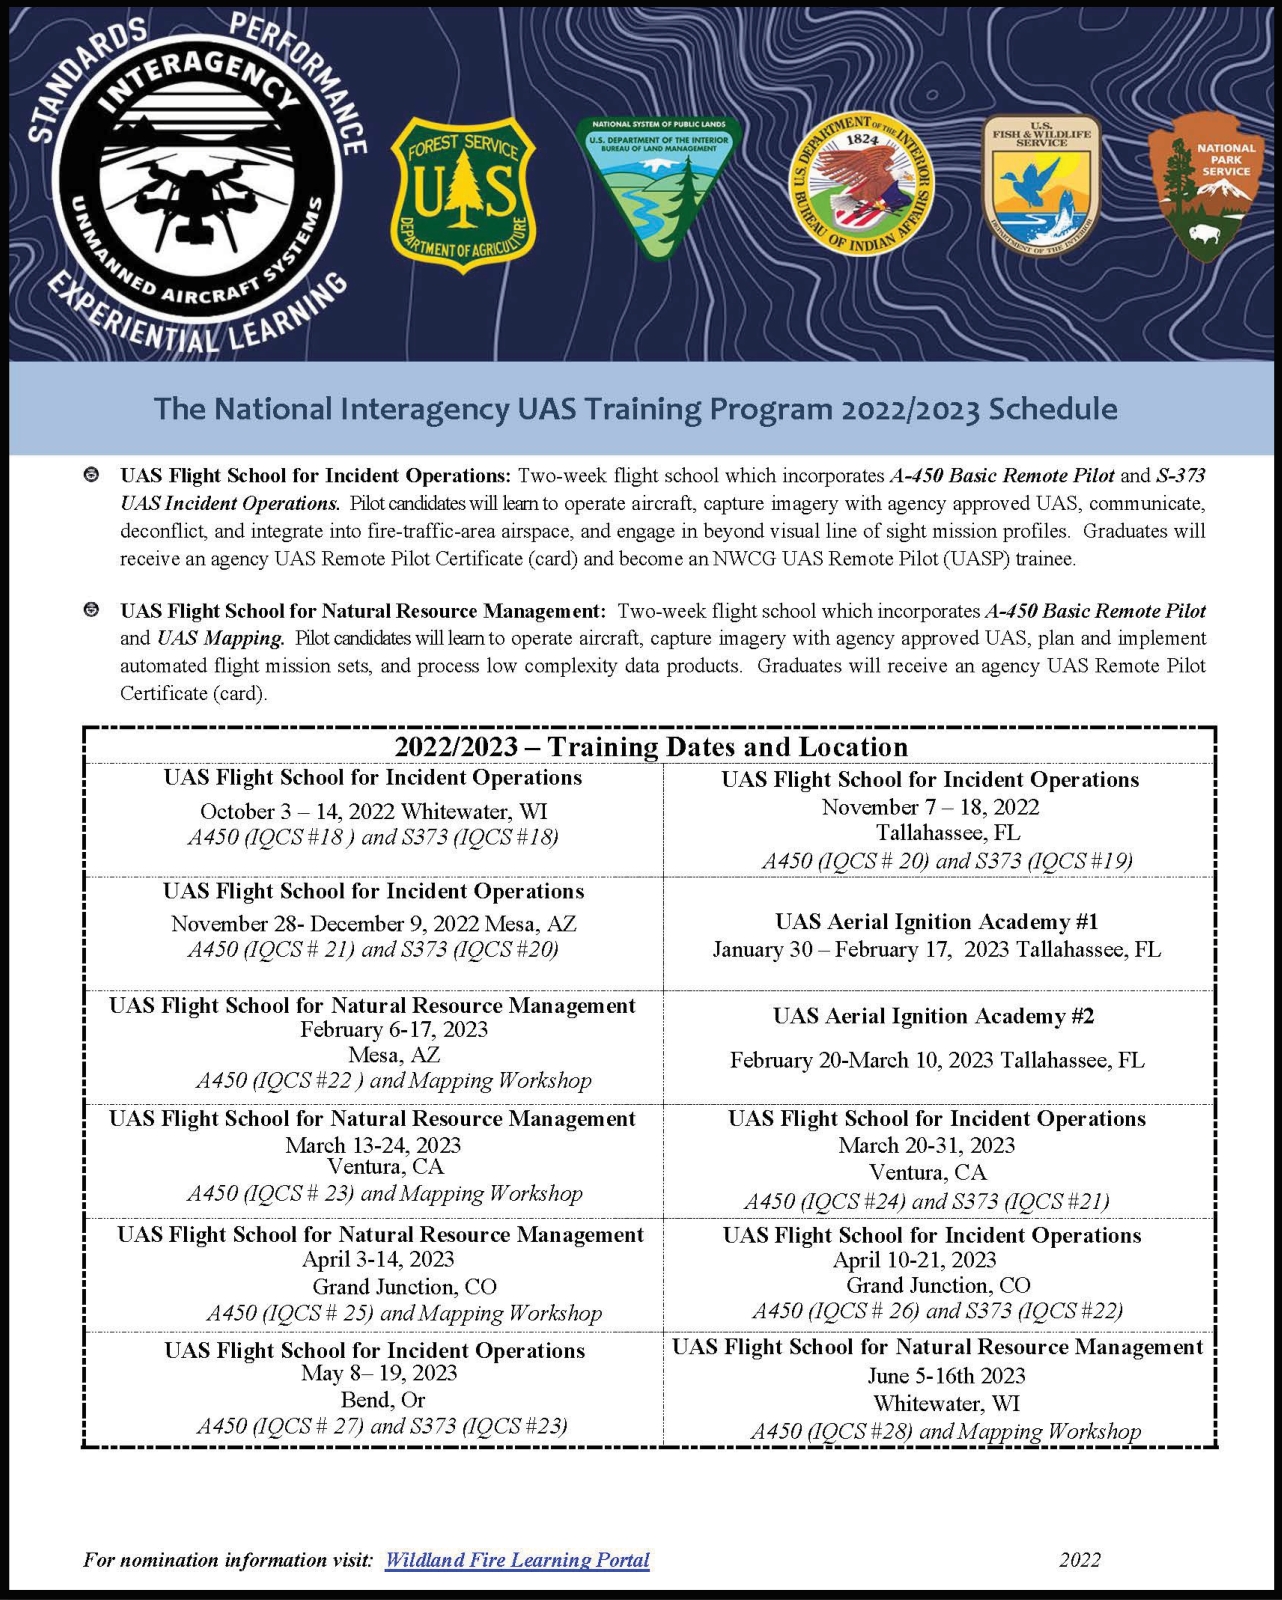 UAS Training Program 2022/2023 Schedule